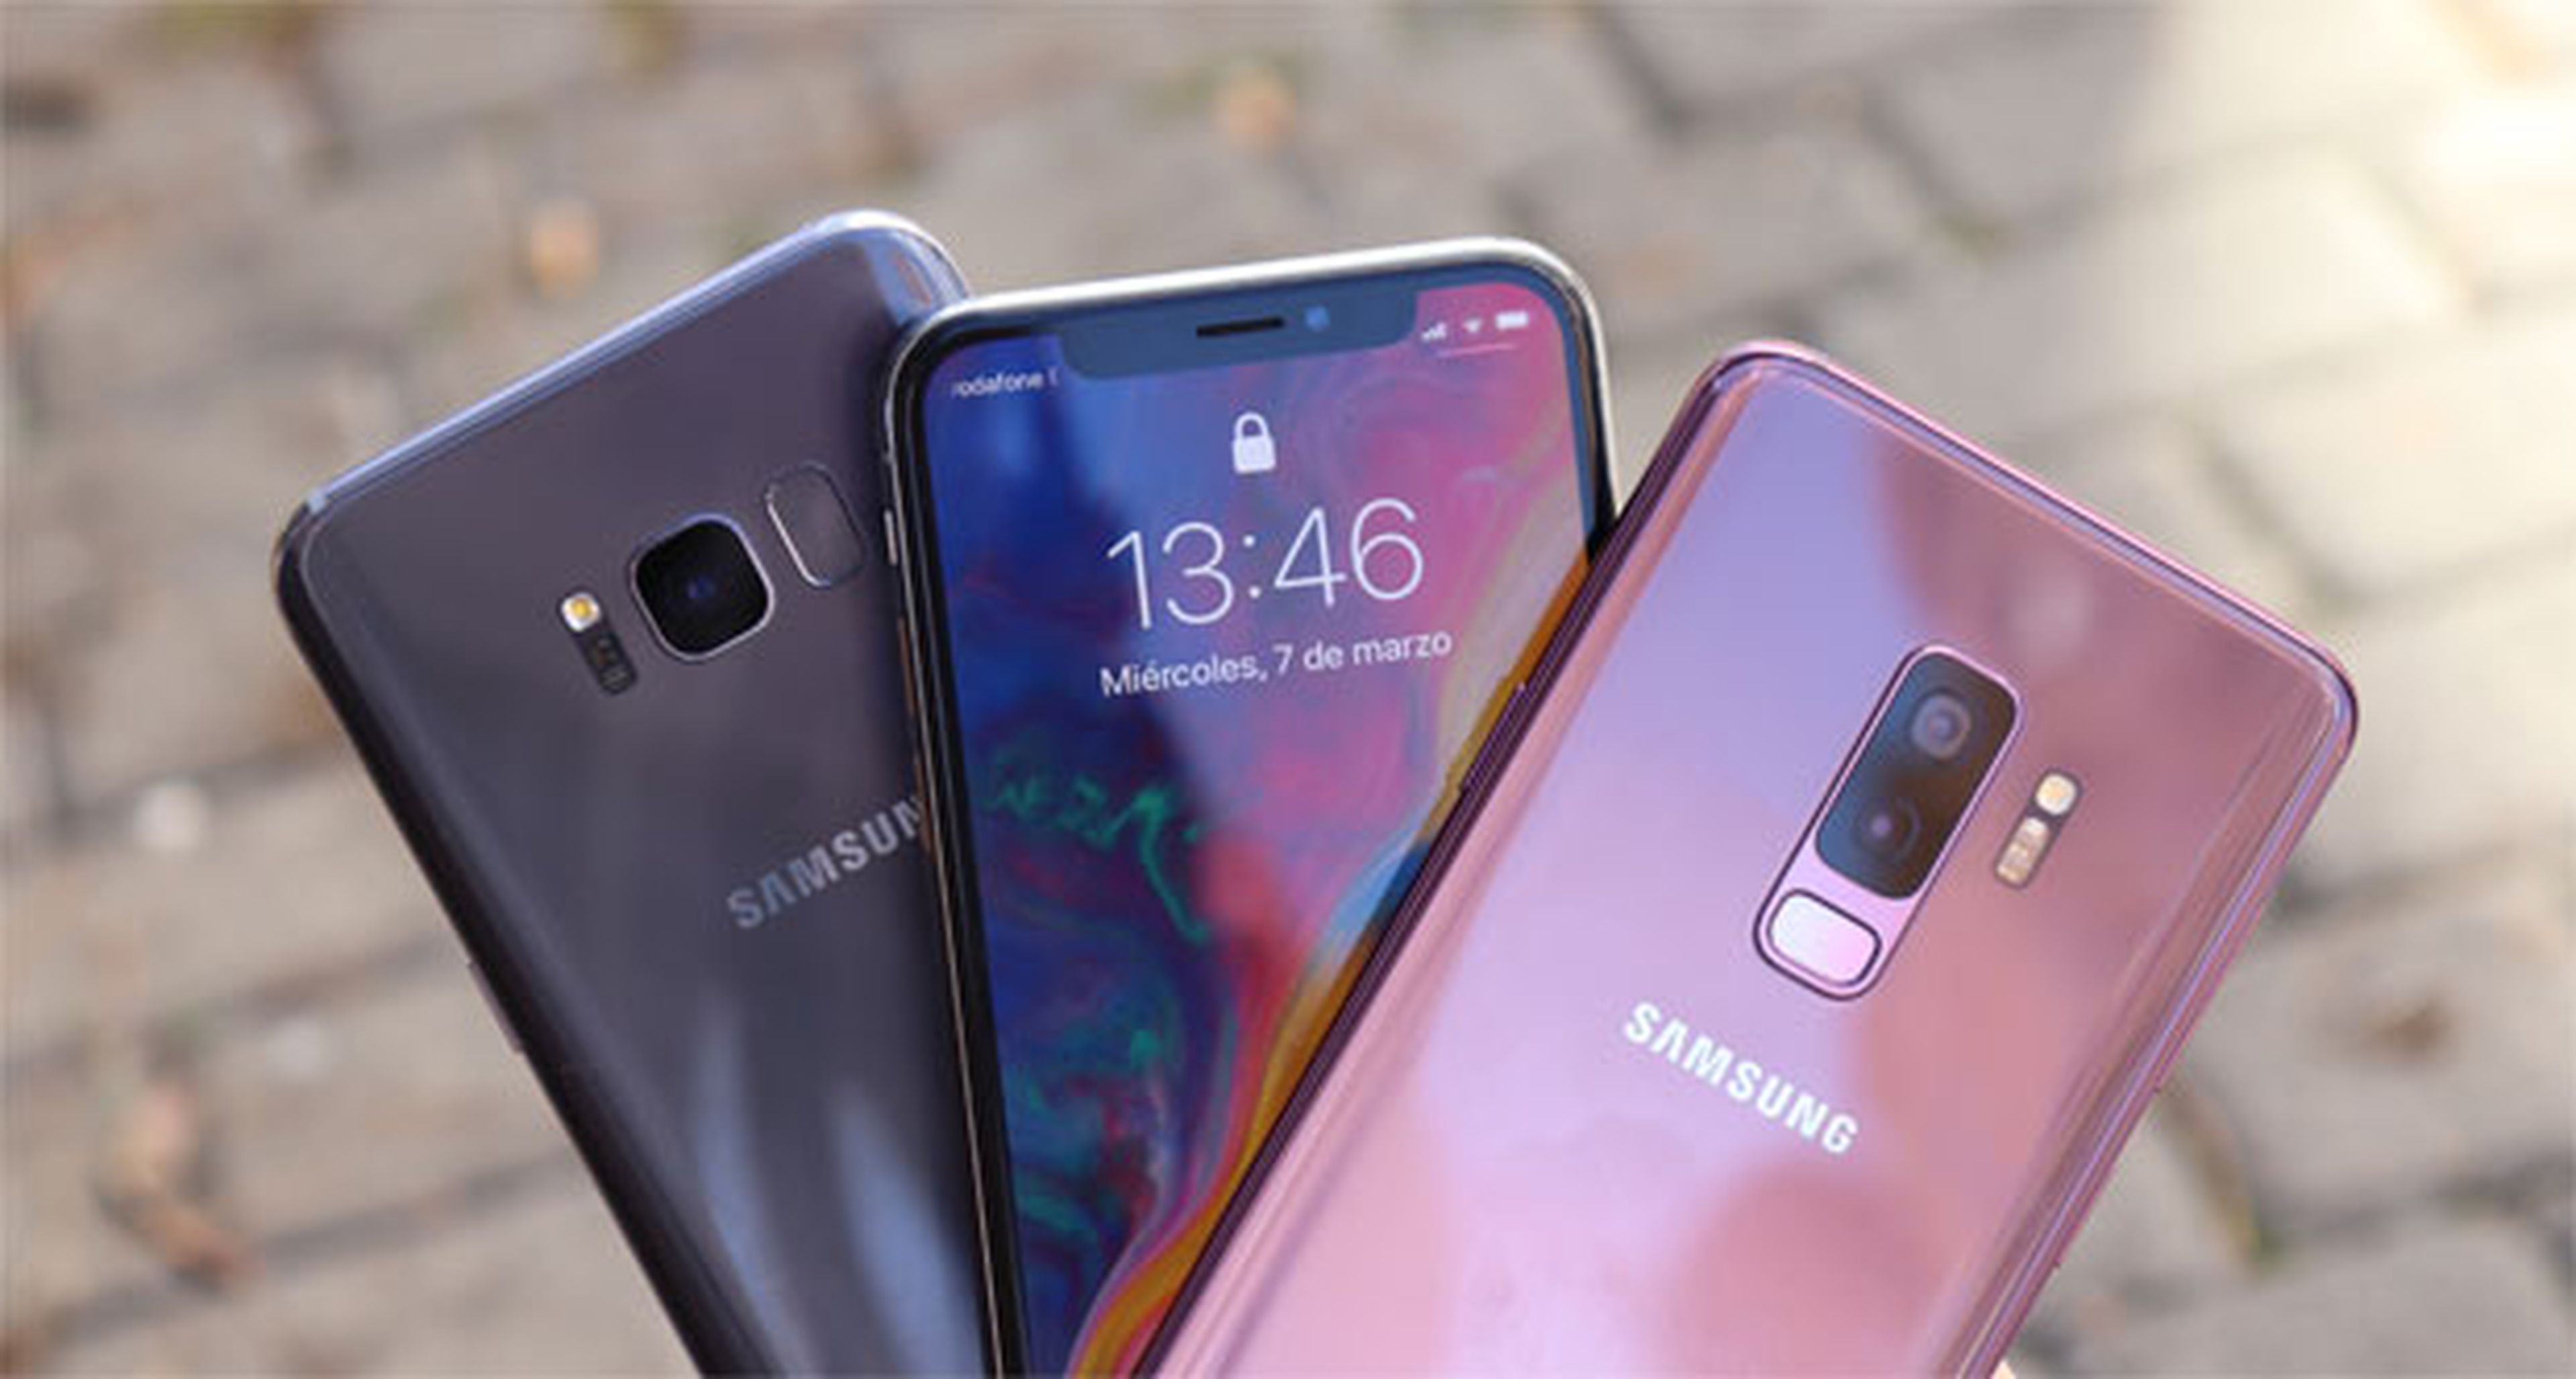 Tres de los mejores móviles del momento en una misma foto: Galaxy S8+, iPhone X y S9+